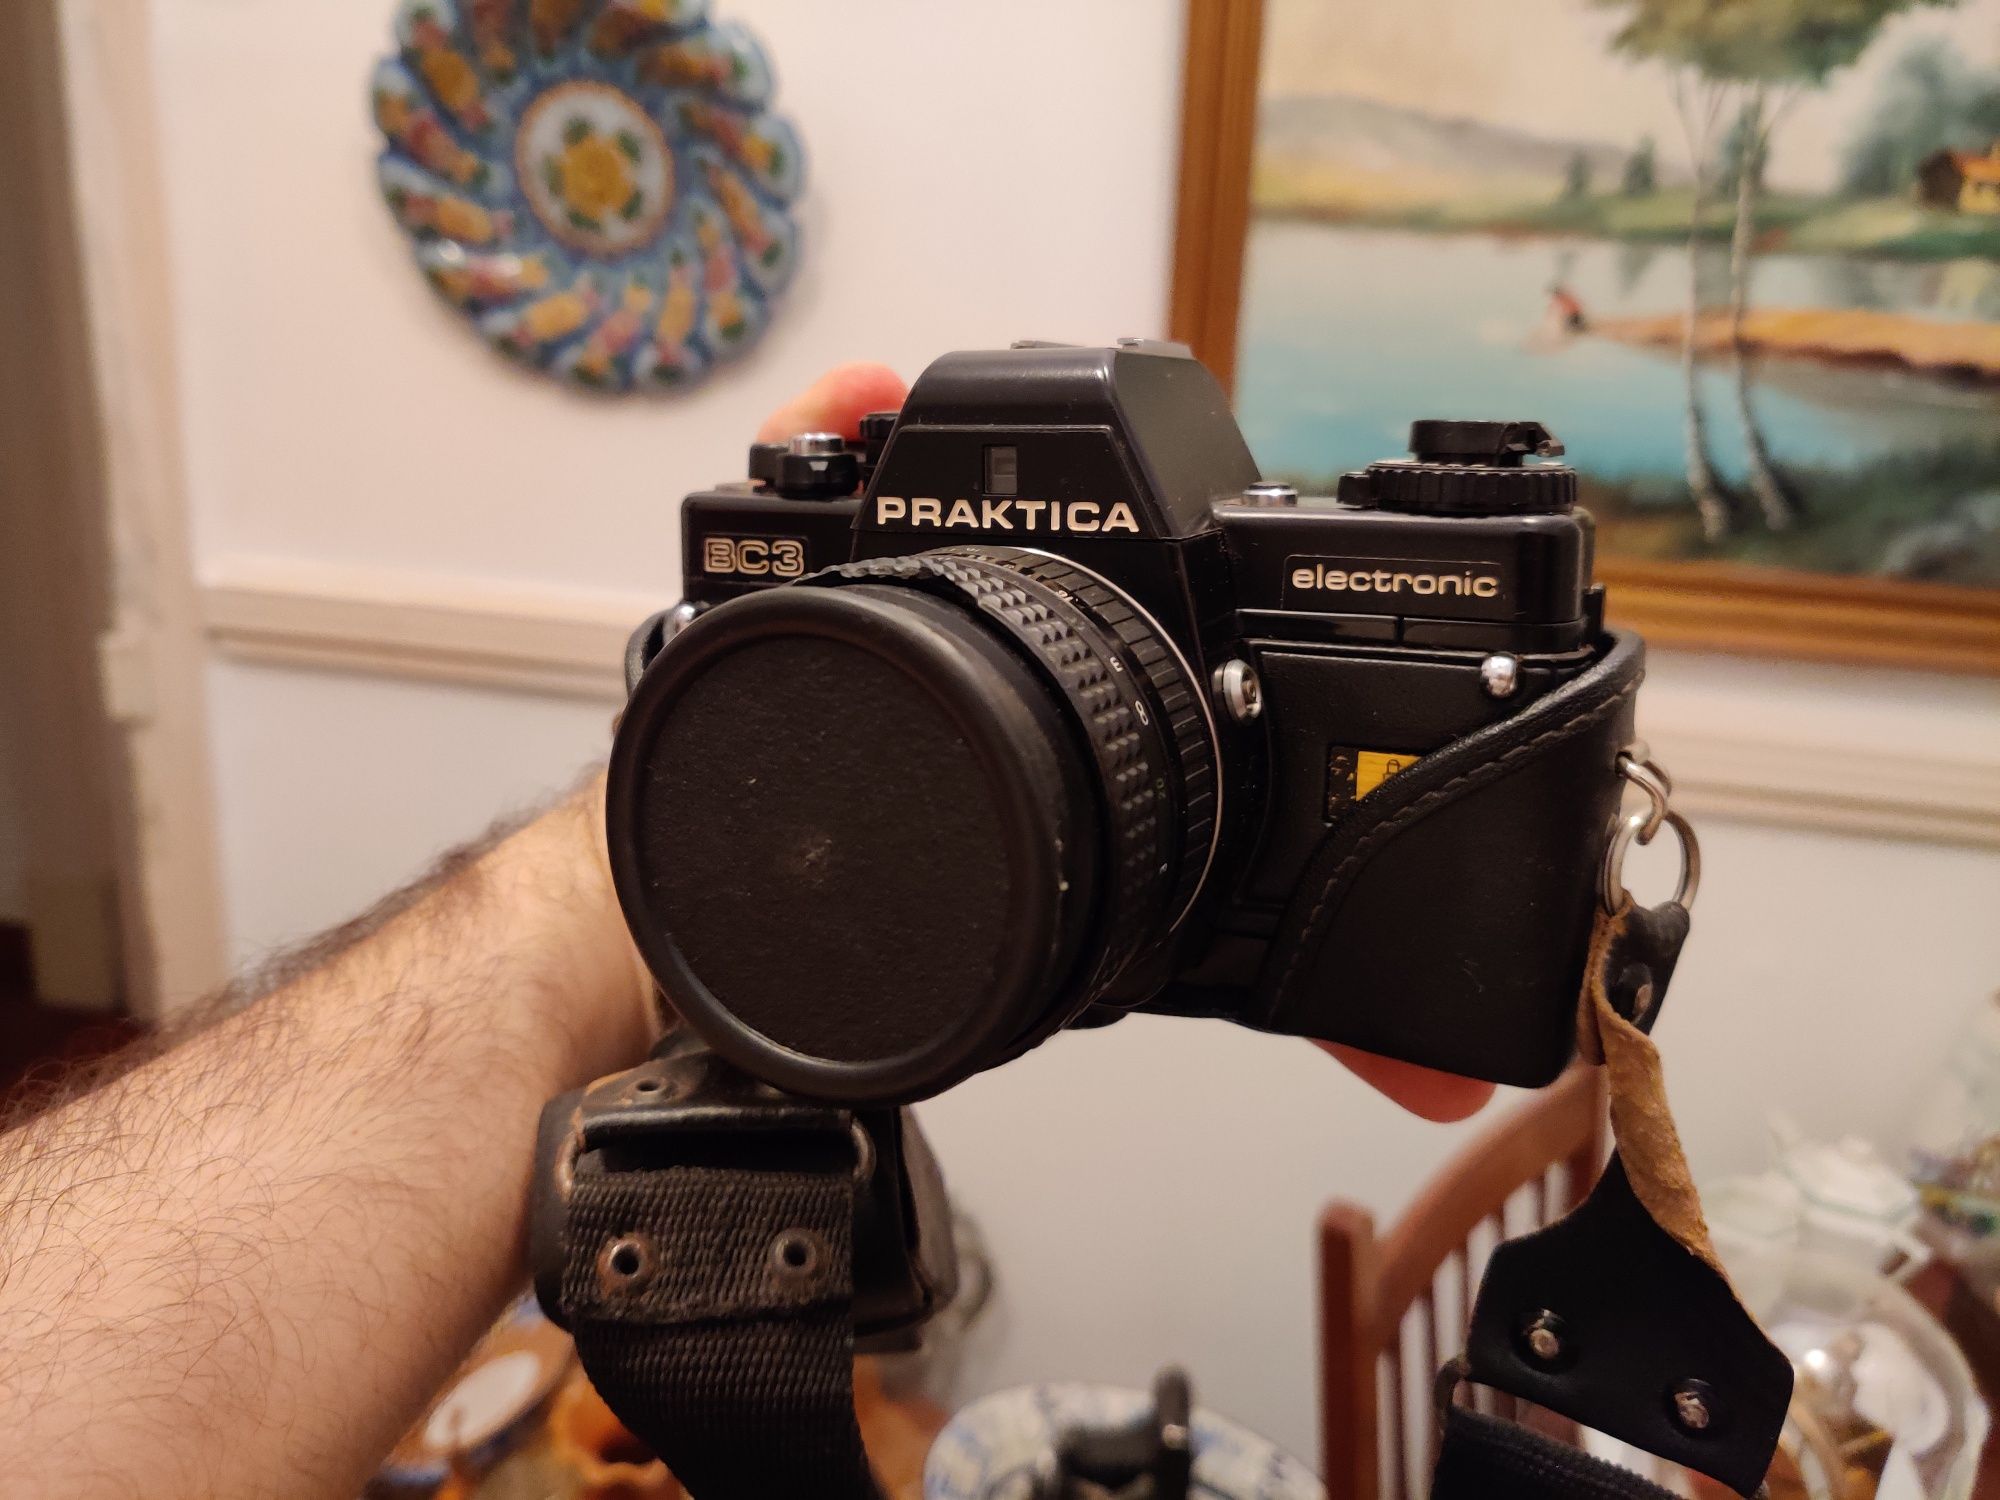 Máquina fotográfica Praktica BC 3 com lente 50mm analógica